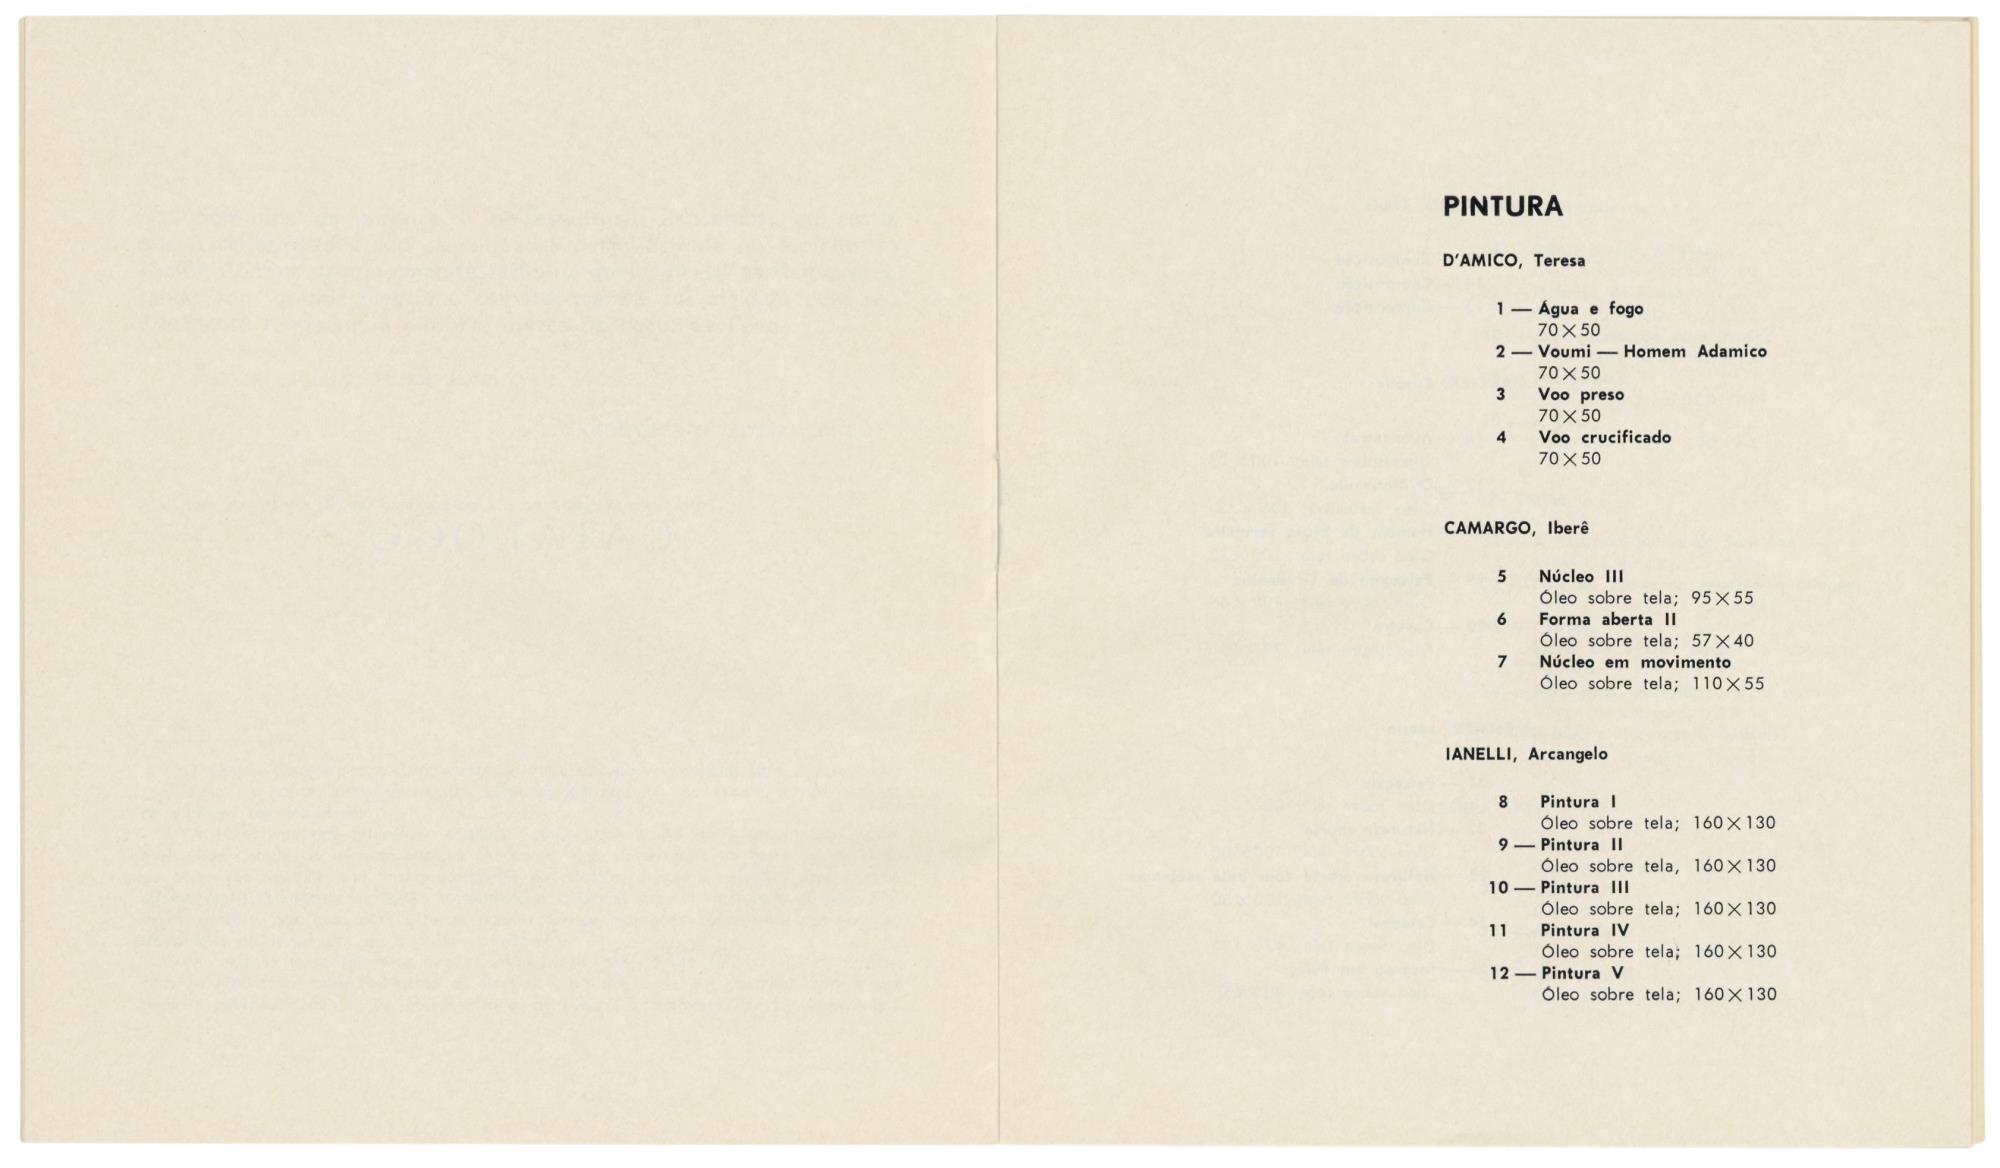 1965_Pint_Esc__Artistas_Bras_catalogo_spread5_AHP1256.2